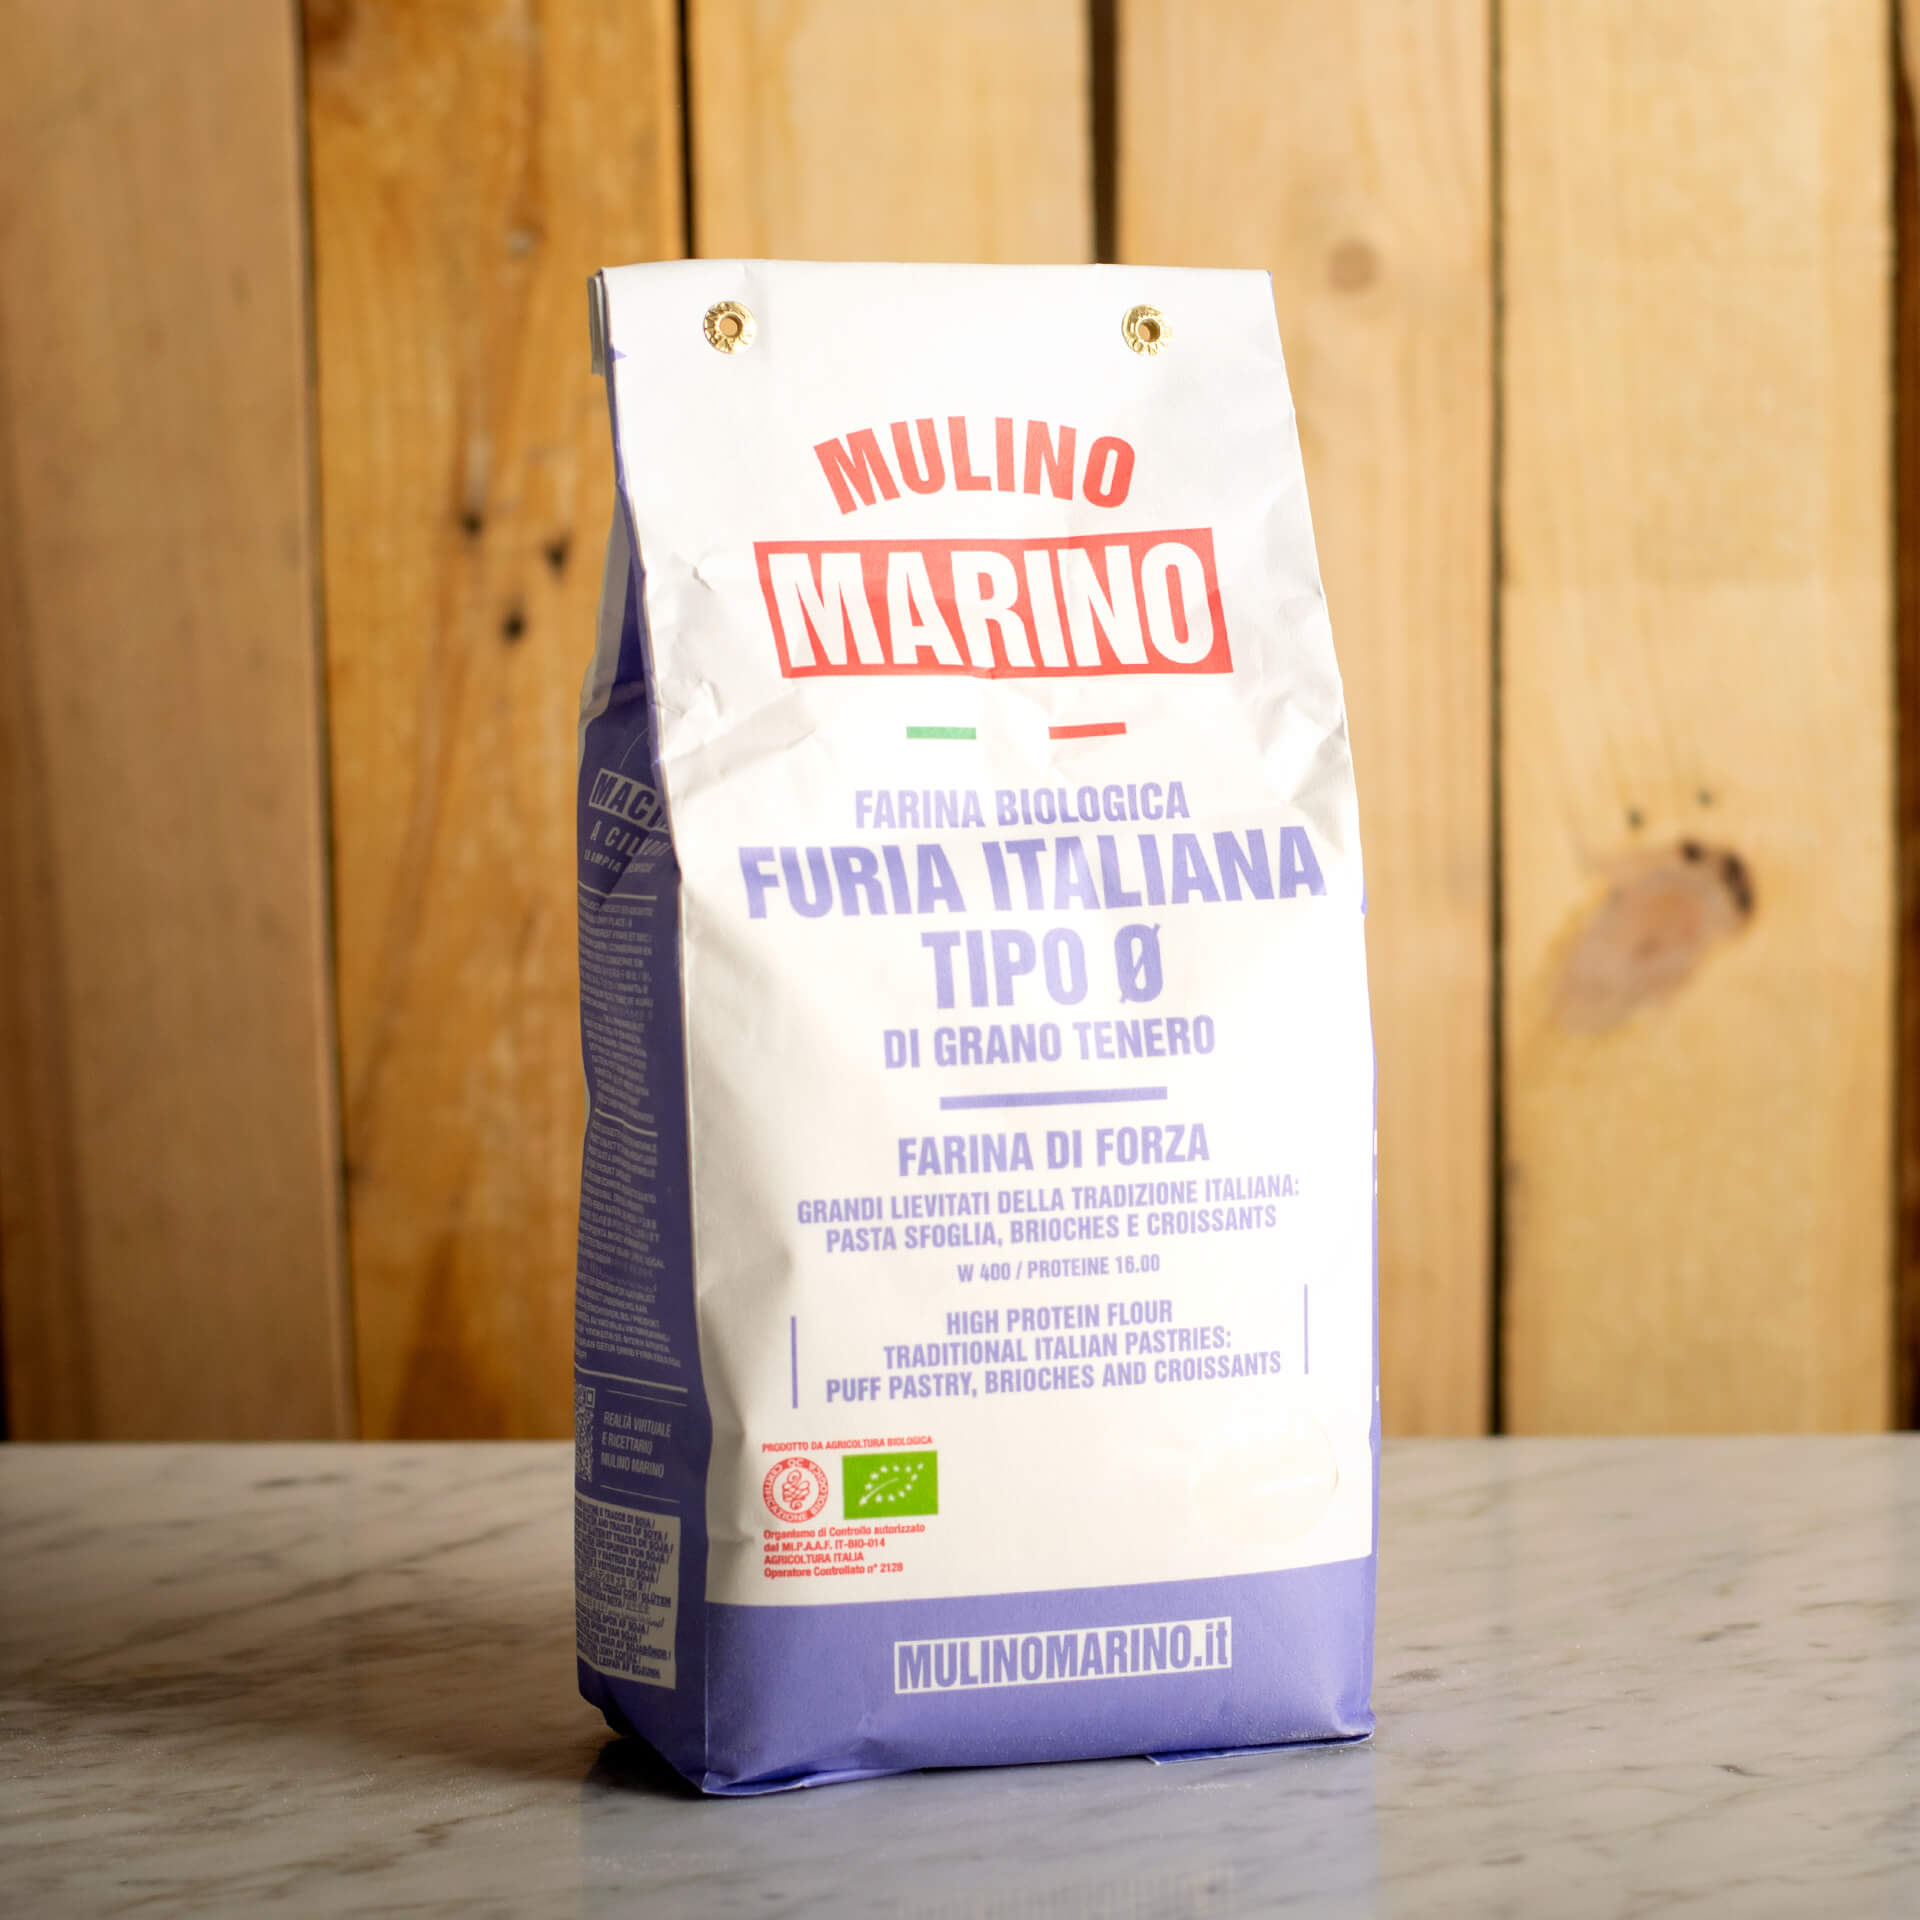 Organic "Furia Italiana" Flour 25kg